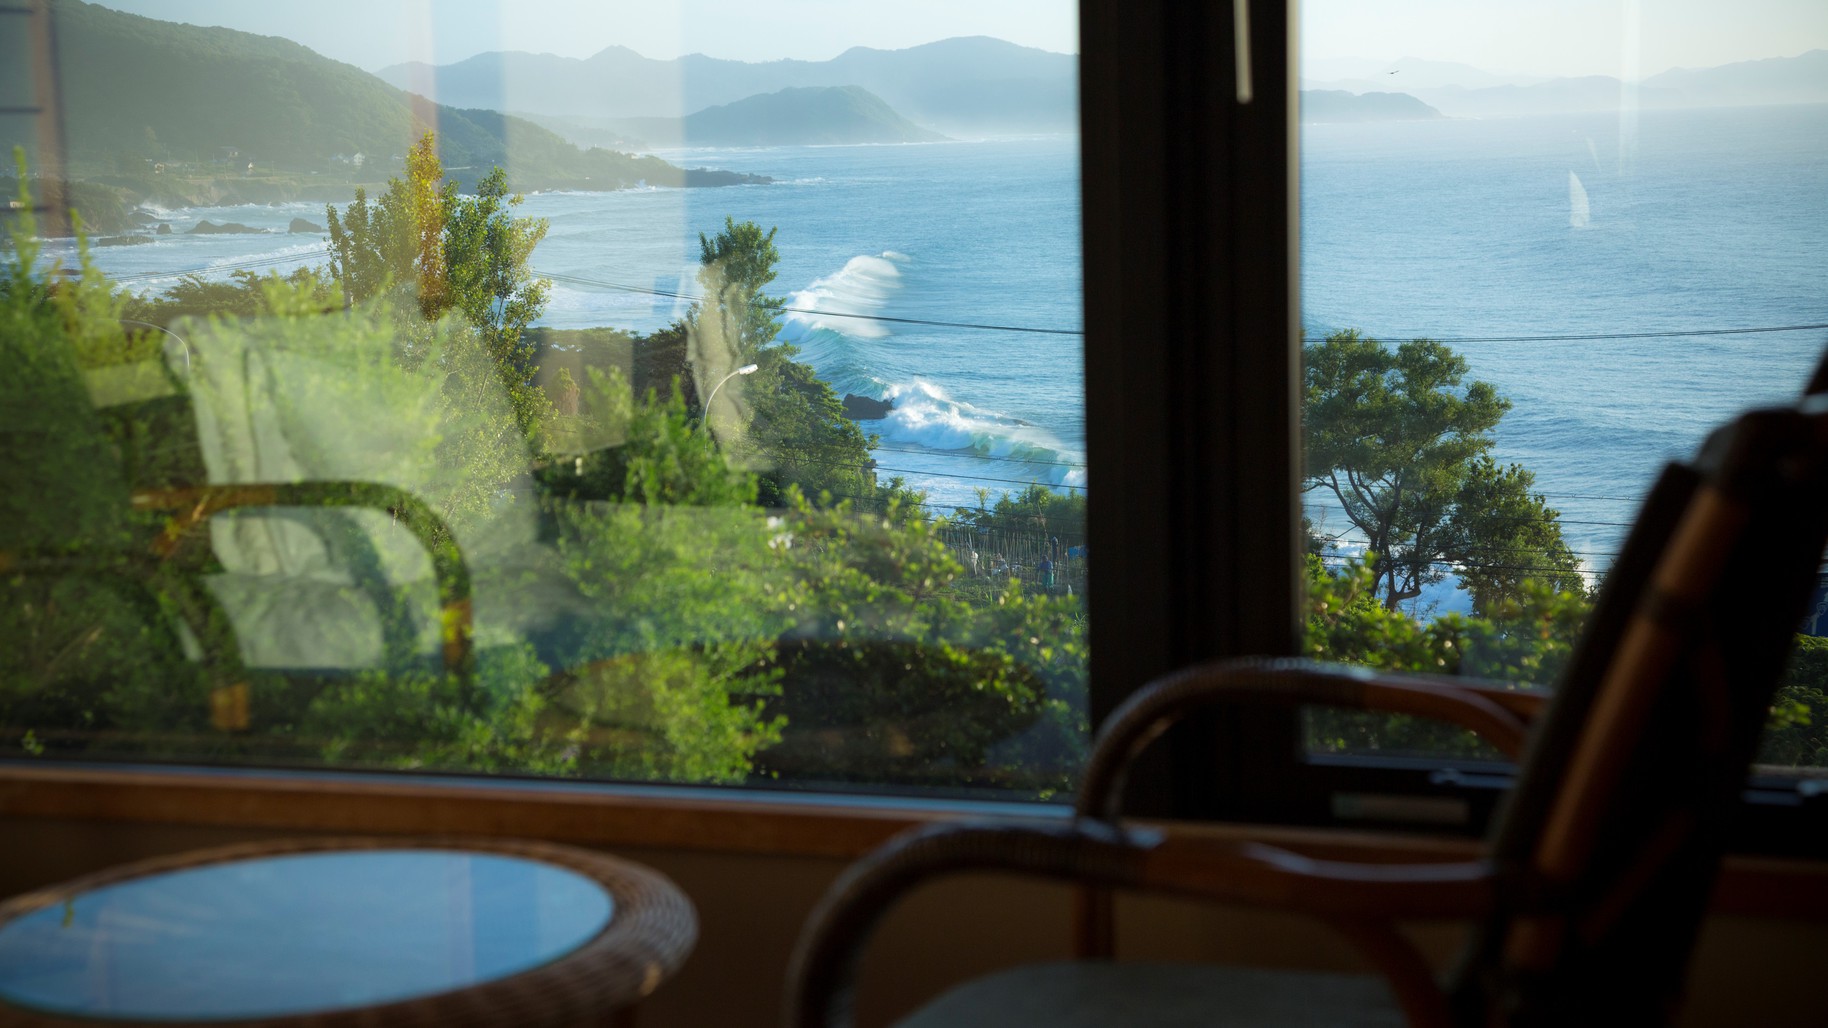 【客室からの眺望】オーシャンビューの客室からは美しい海が一望できます。